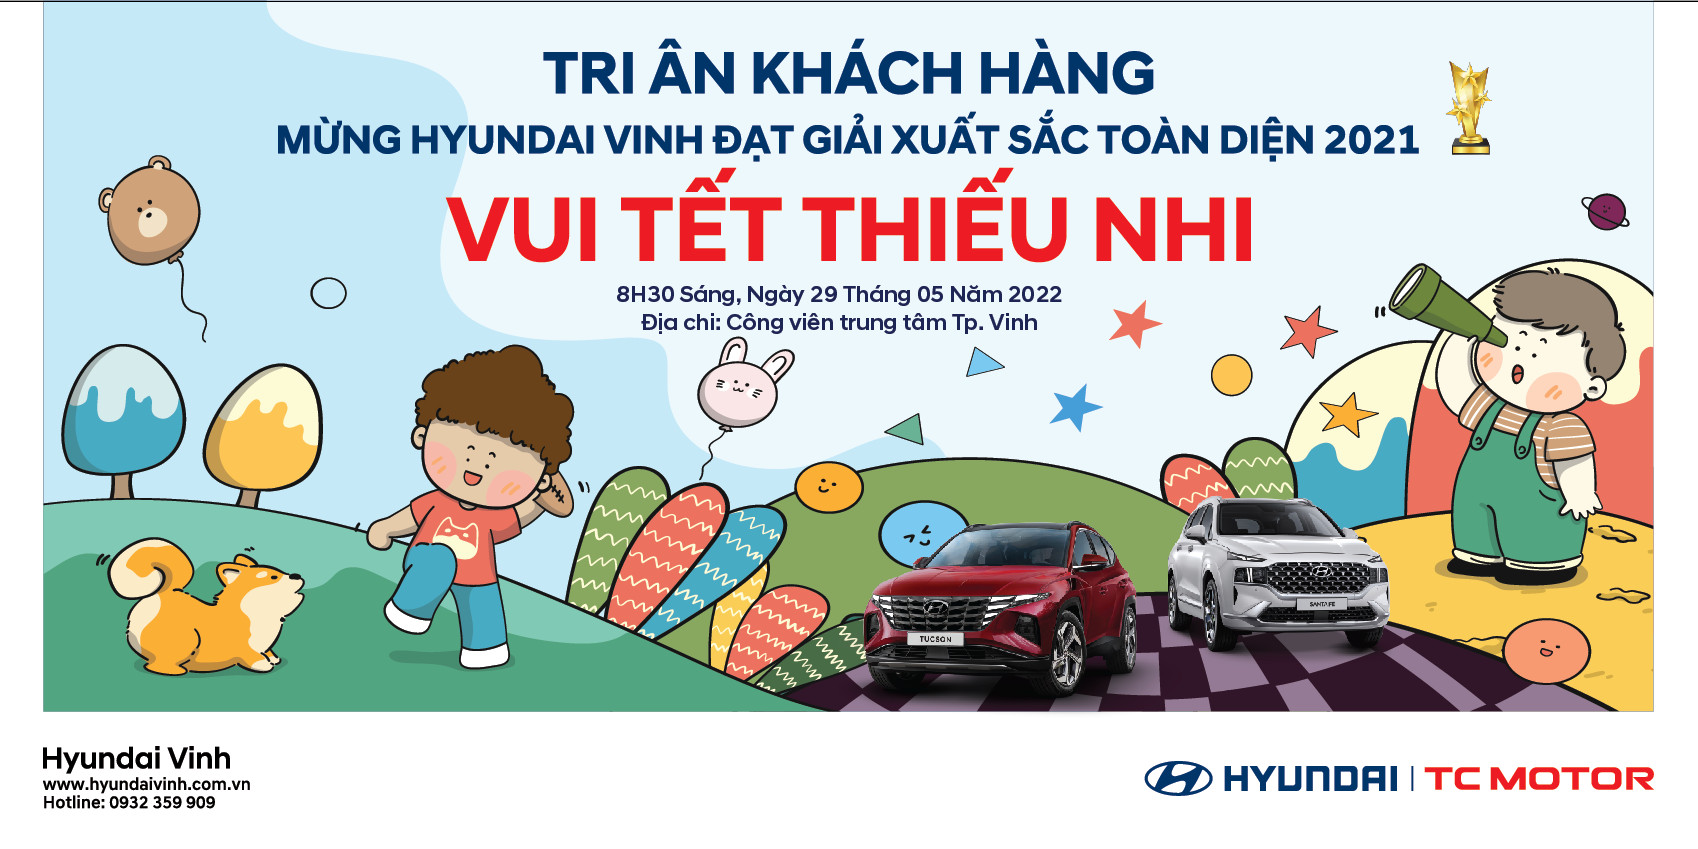 Thương hiệu Hyundai Vinh đã tri ân thiếu nhi với các chiến dịch an toàn giao thông, mang lại niềm vui và sự am hiểu về thực trạng giao thông cho các em nhỏ. Đây cũng là cơ hội để cha mẹ hướng dẫn các con thực hiện những quy tắc an toàn khi tham gia giao thông.